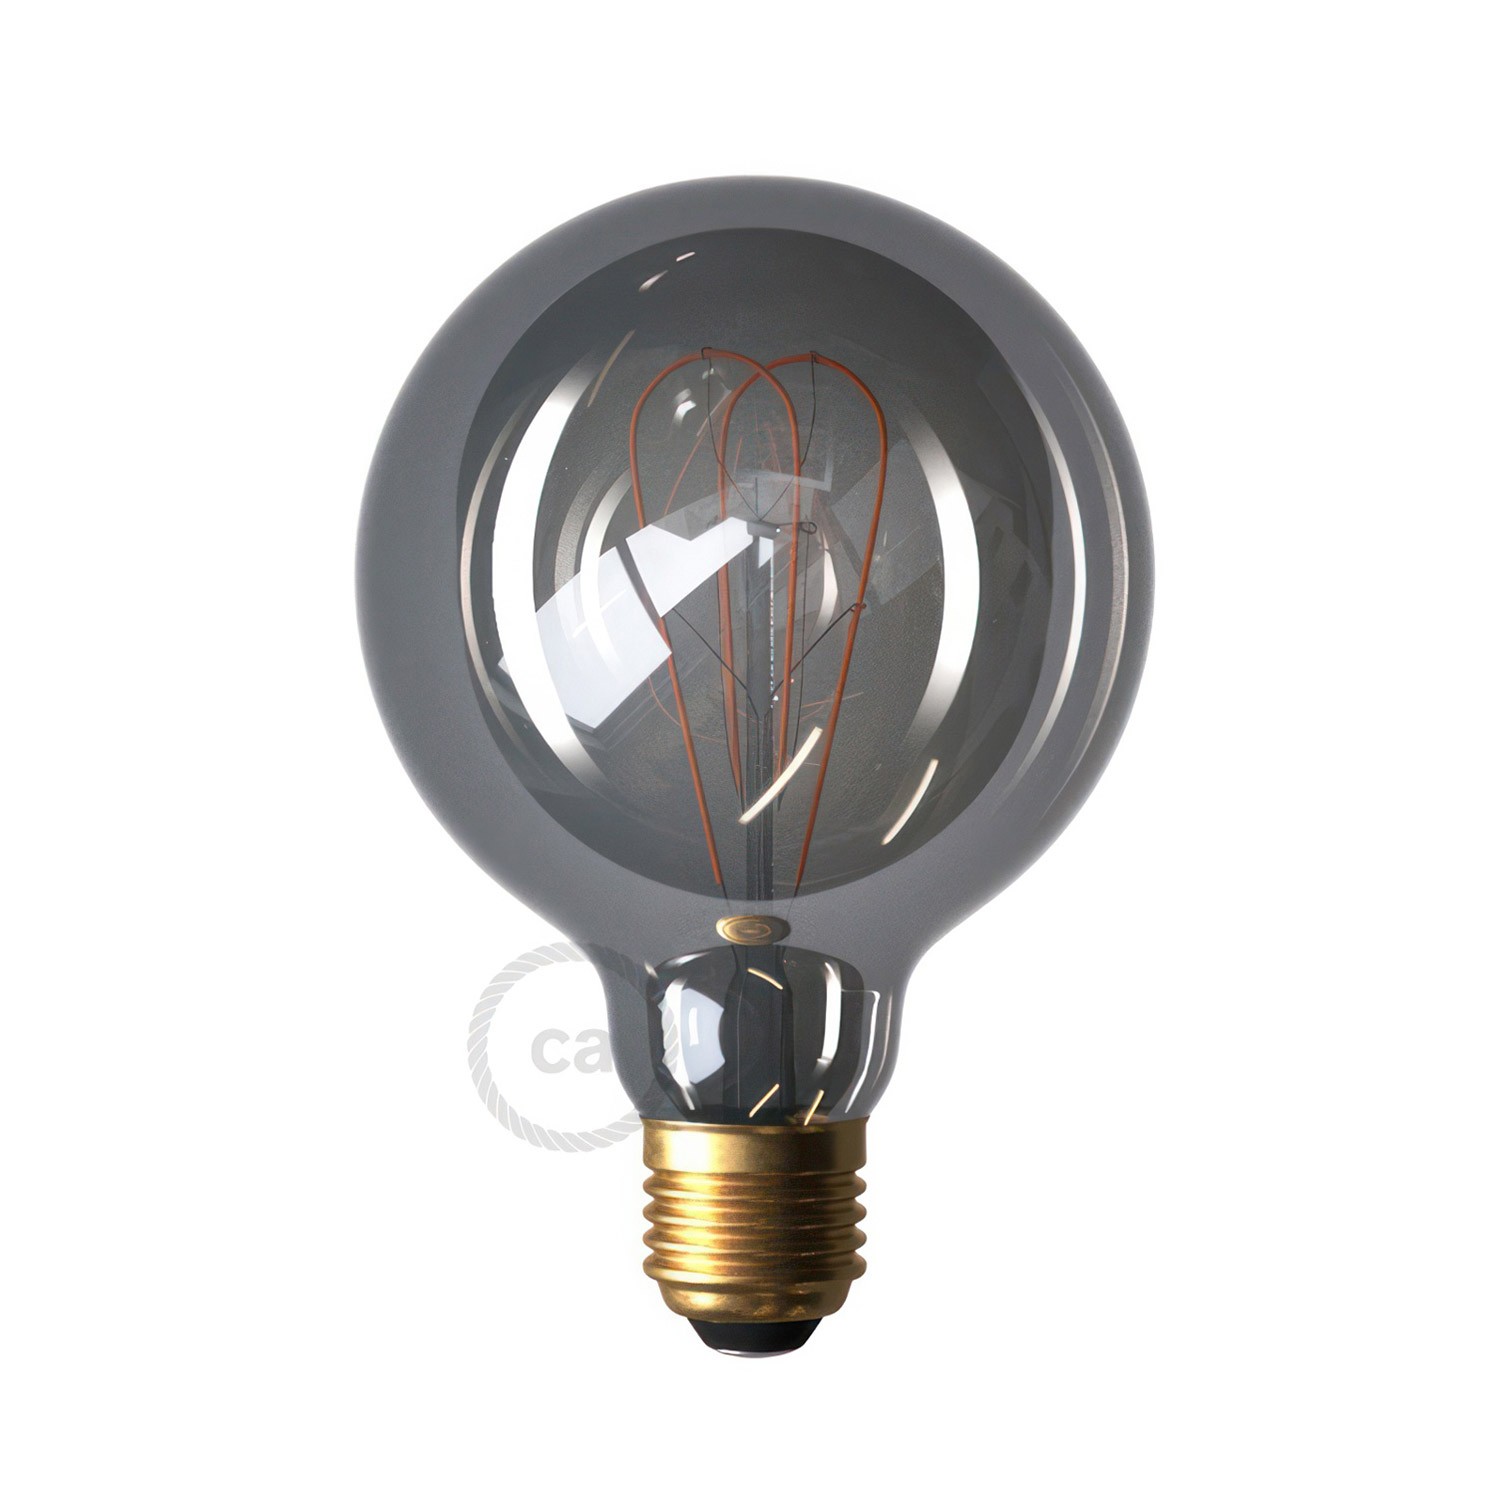 Flex 60, flexibilné nástenné alebo stropné svietidlo, poskytuje rozptýlené svetlo s LED žiarovkou G95